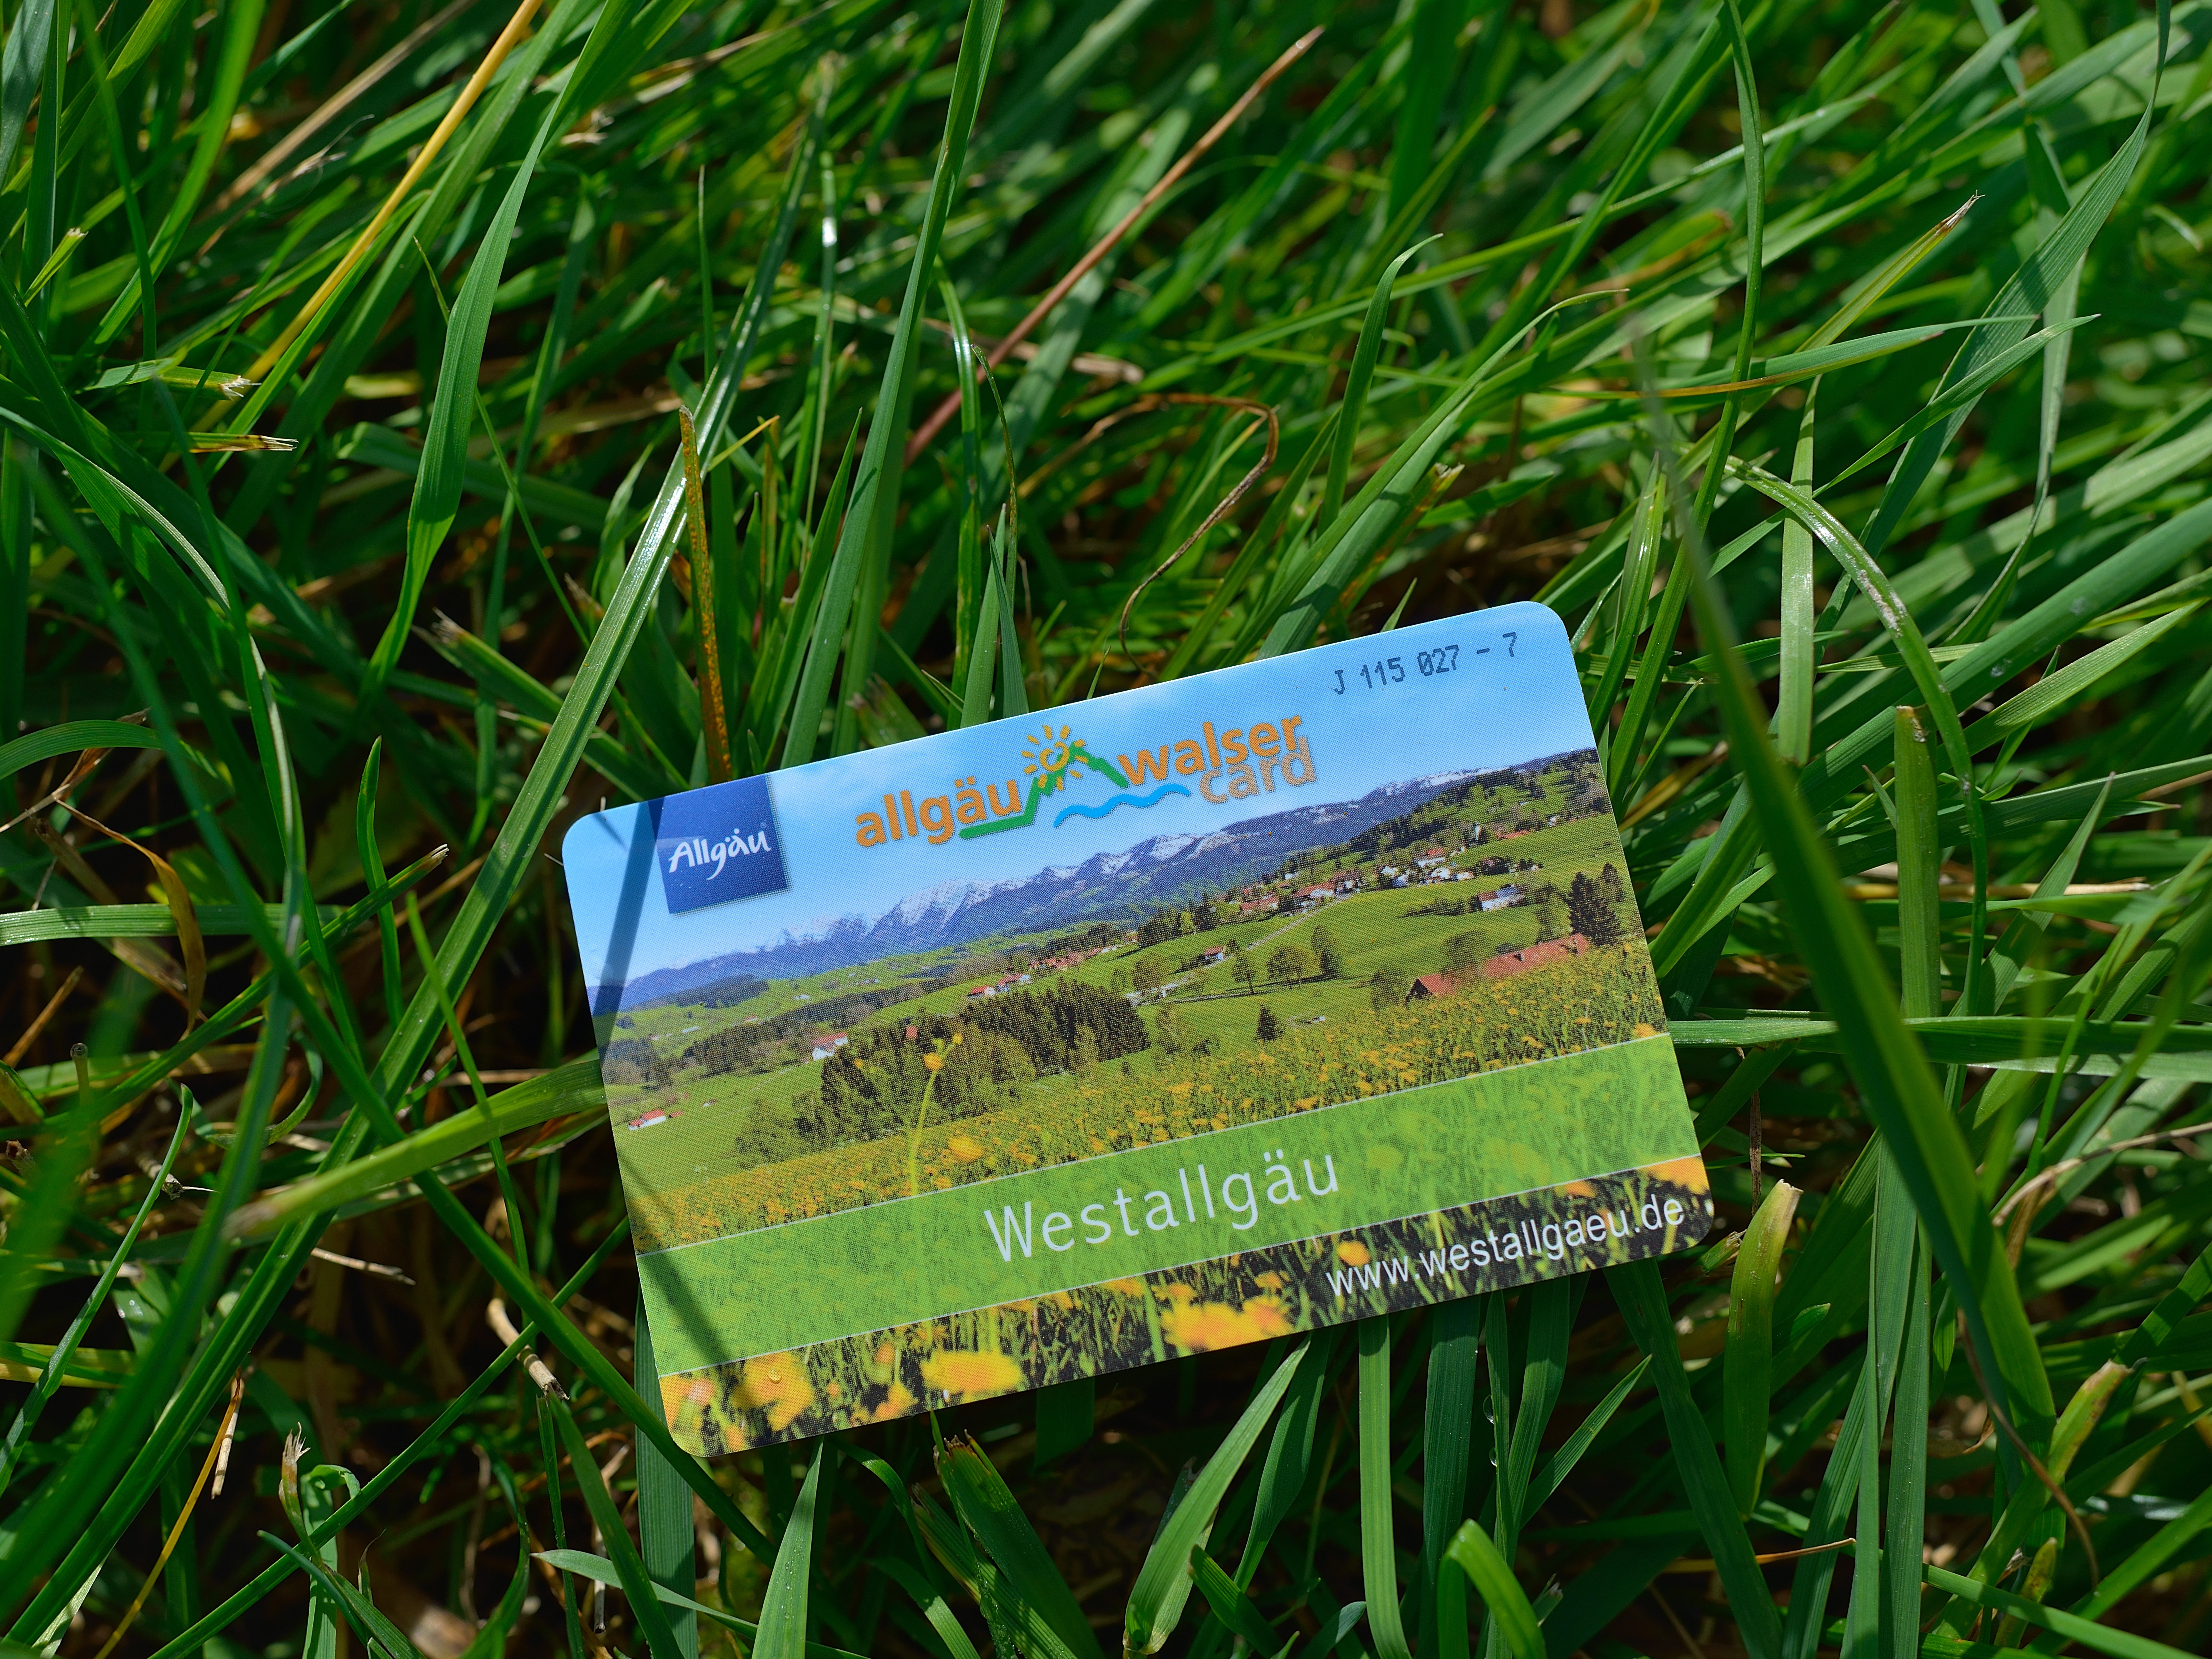  Allgäu-Walser-Card im Gras - das Bild wird mit Klick vergrößert 